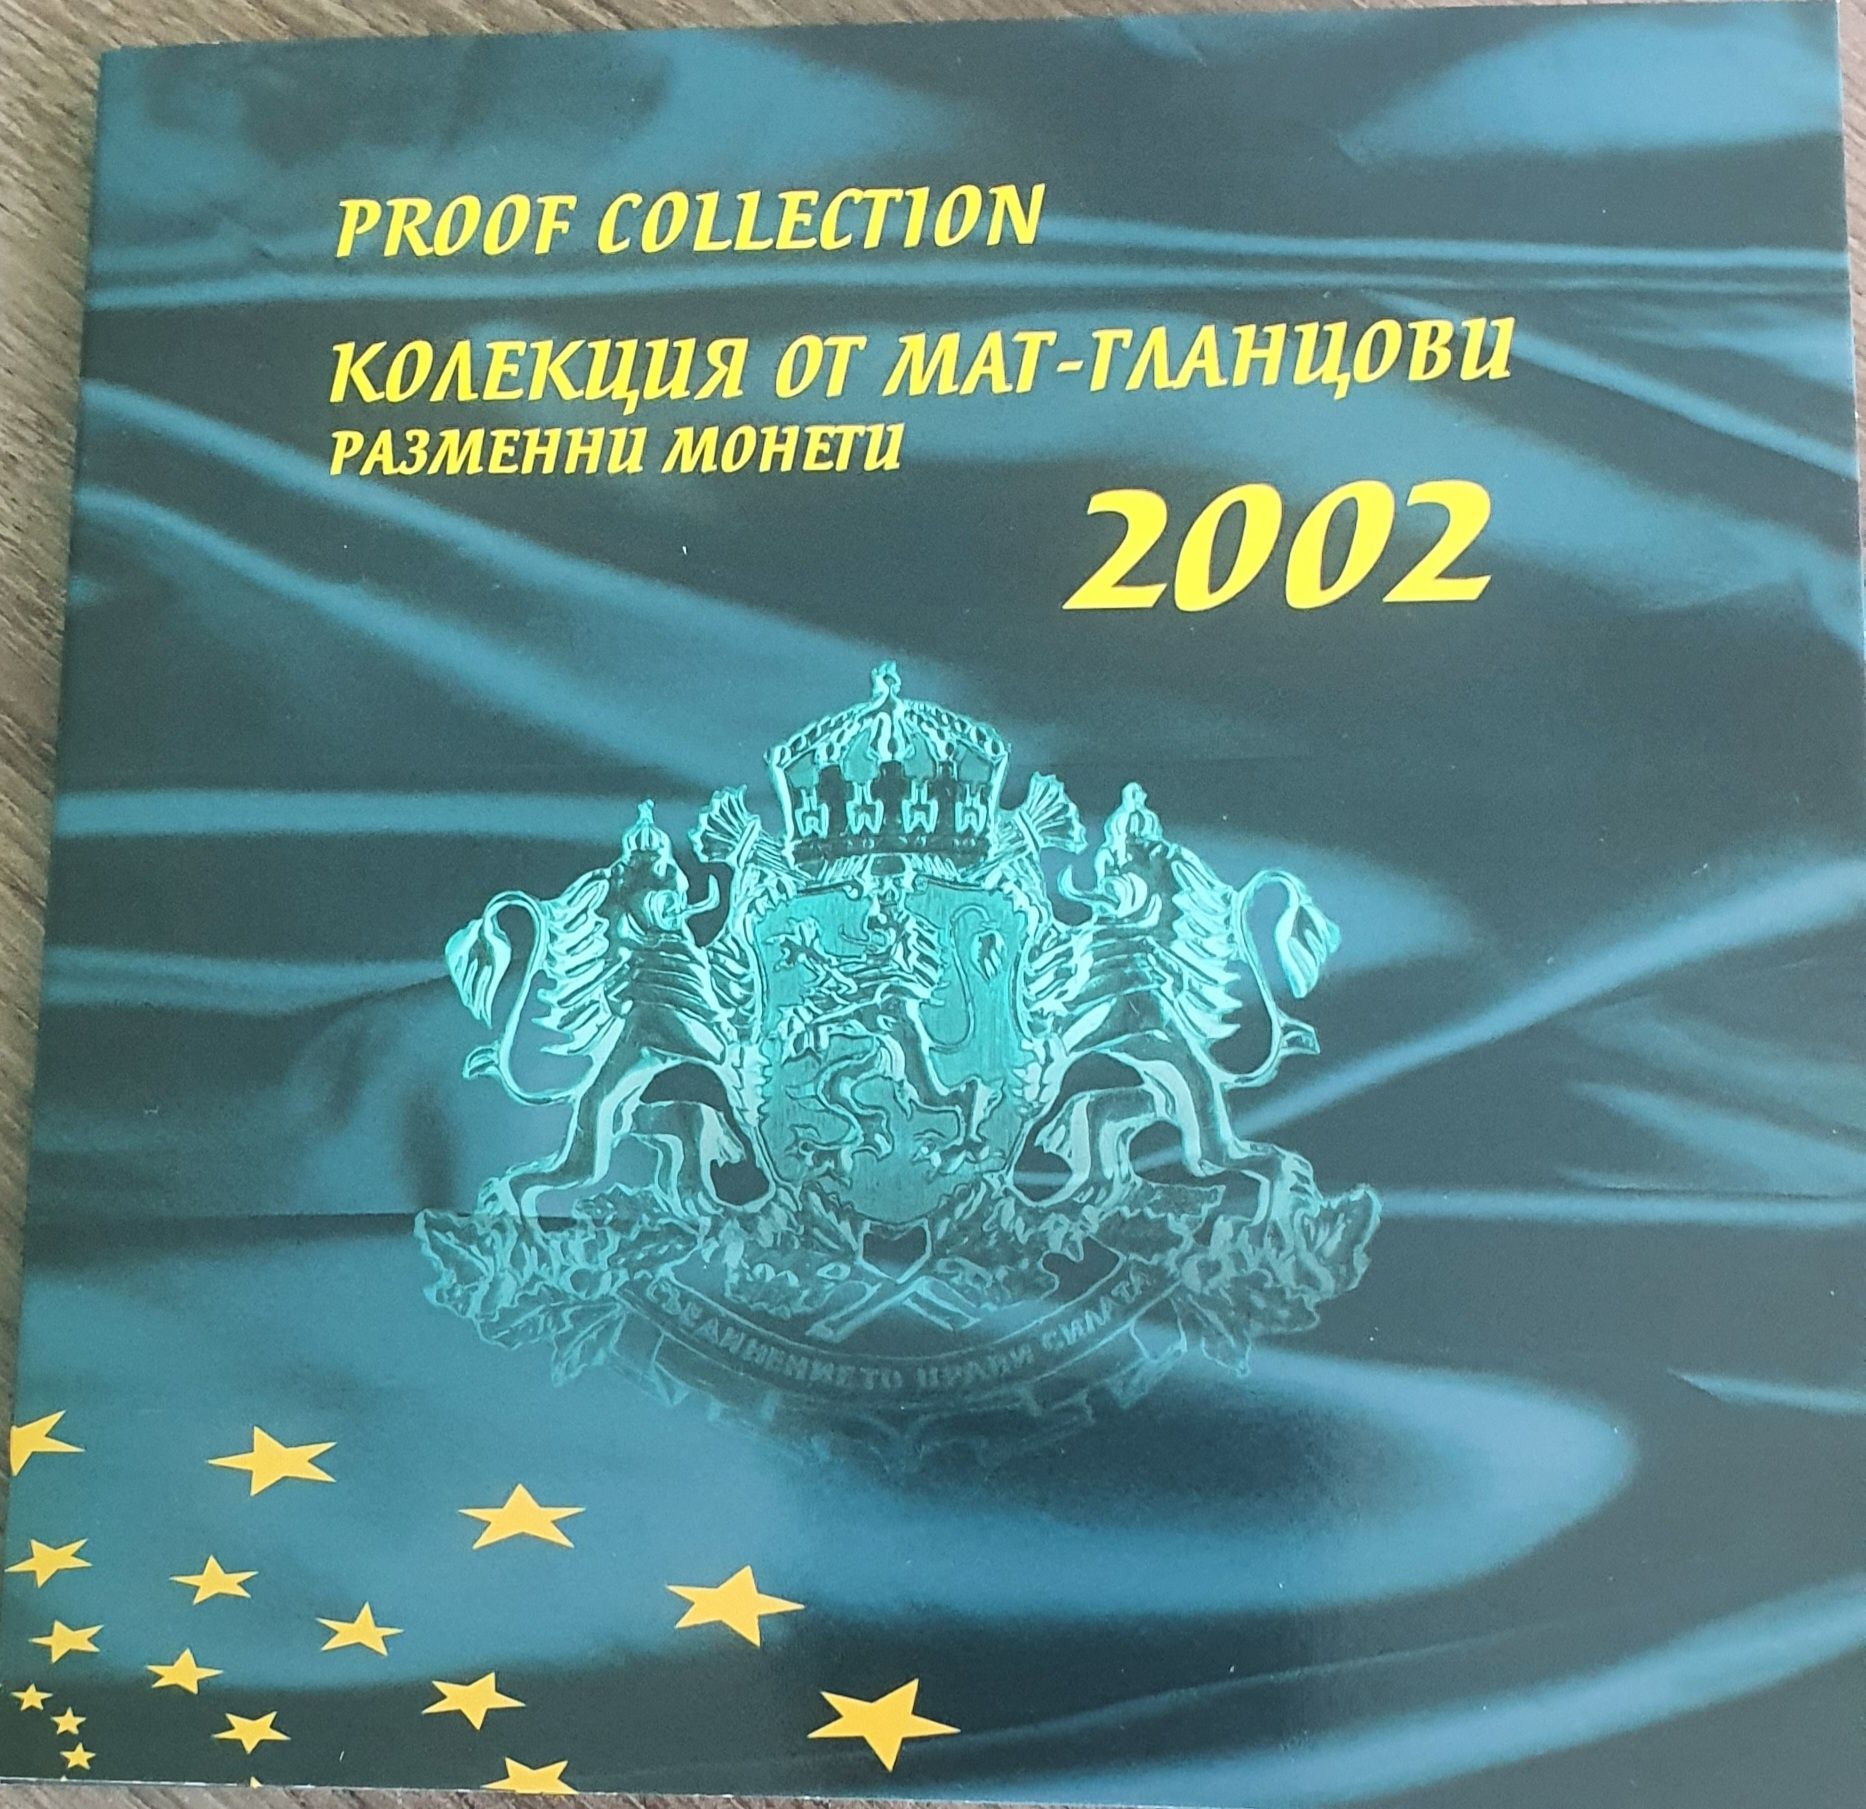 Колекция мат-гланцови монети от 2002 г.